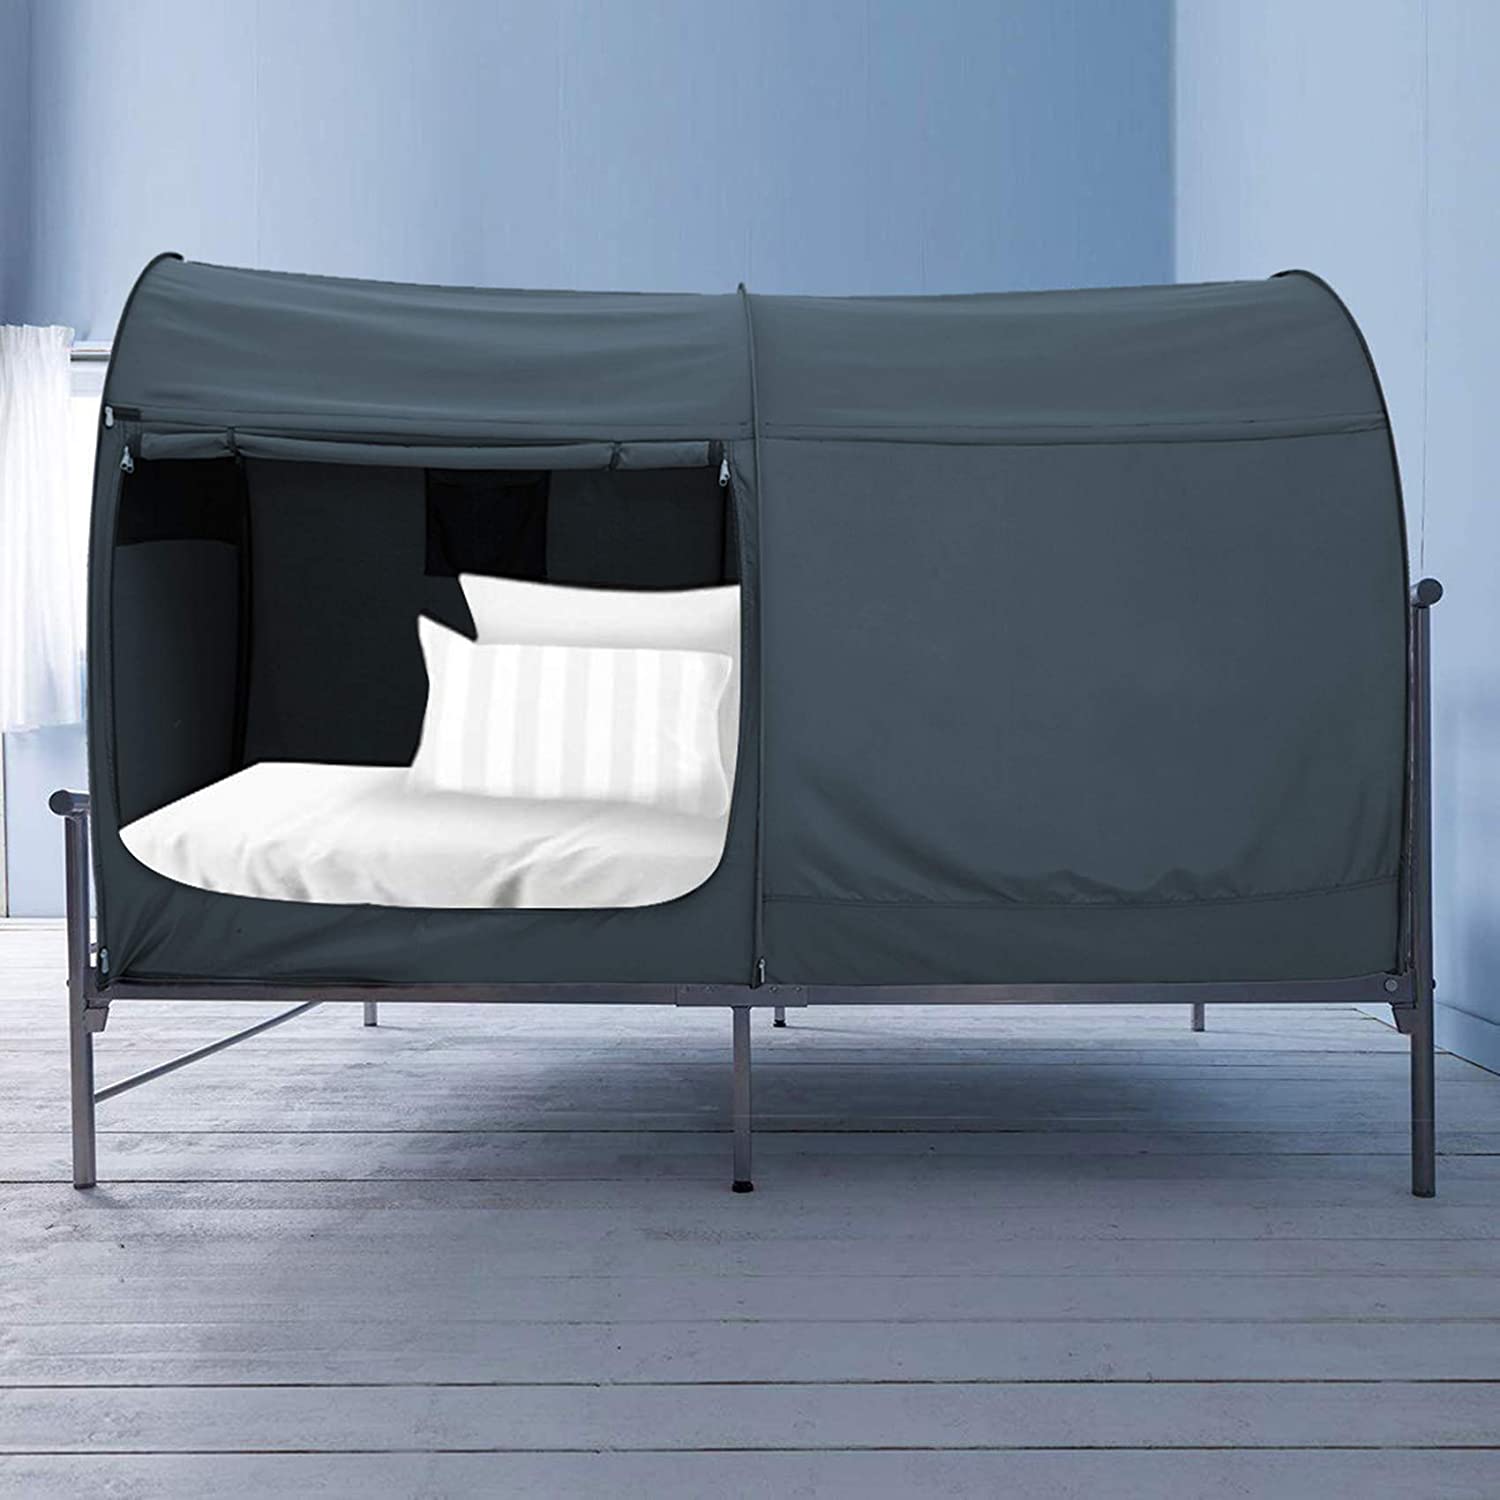 Besten Floorless Indoor Privacy Tent On Bed With Color Poles For Cozy Sleep In D 